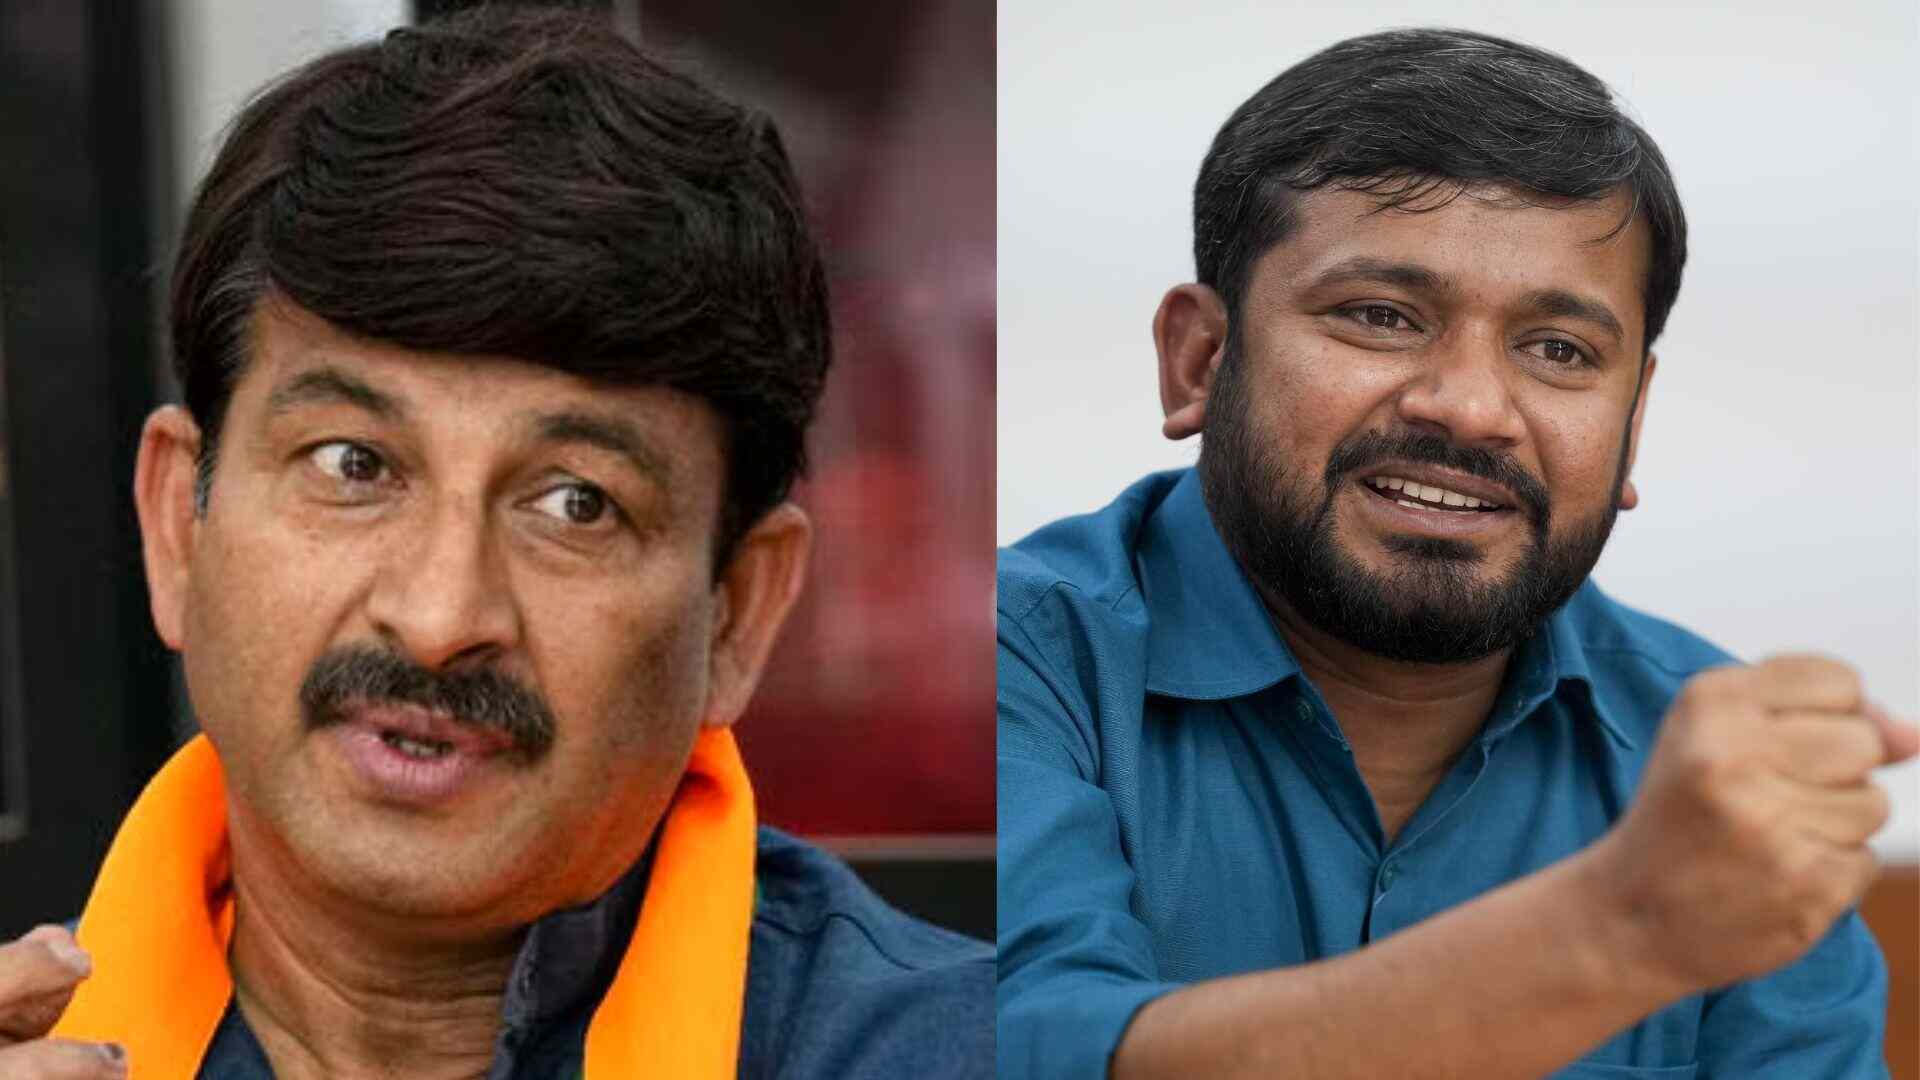 “He Has Been Abusing Army, Won’t Get Any Votes”: Manoj Tiwari On Opponent Kanhaiya Kumar